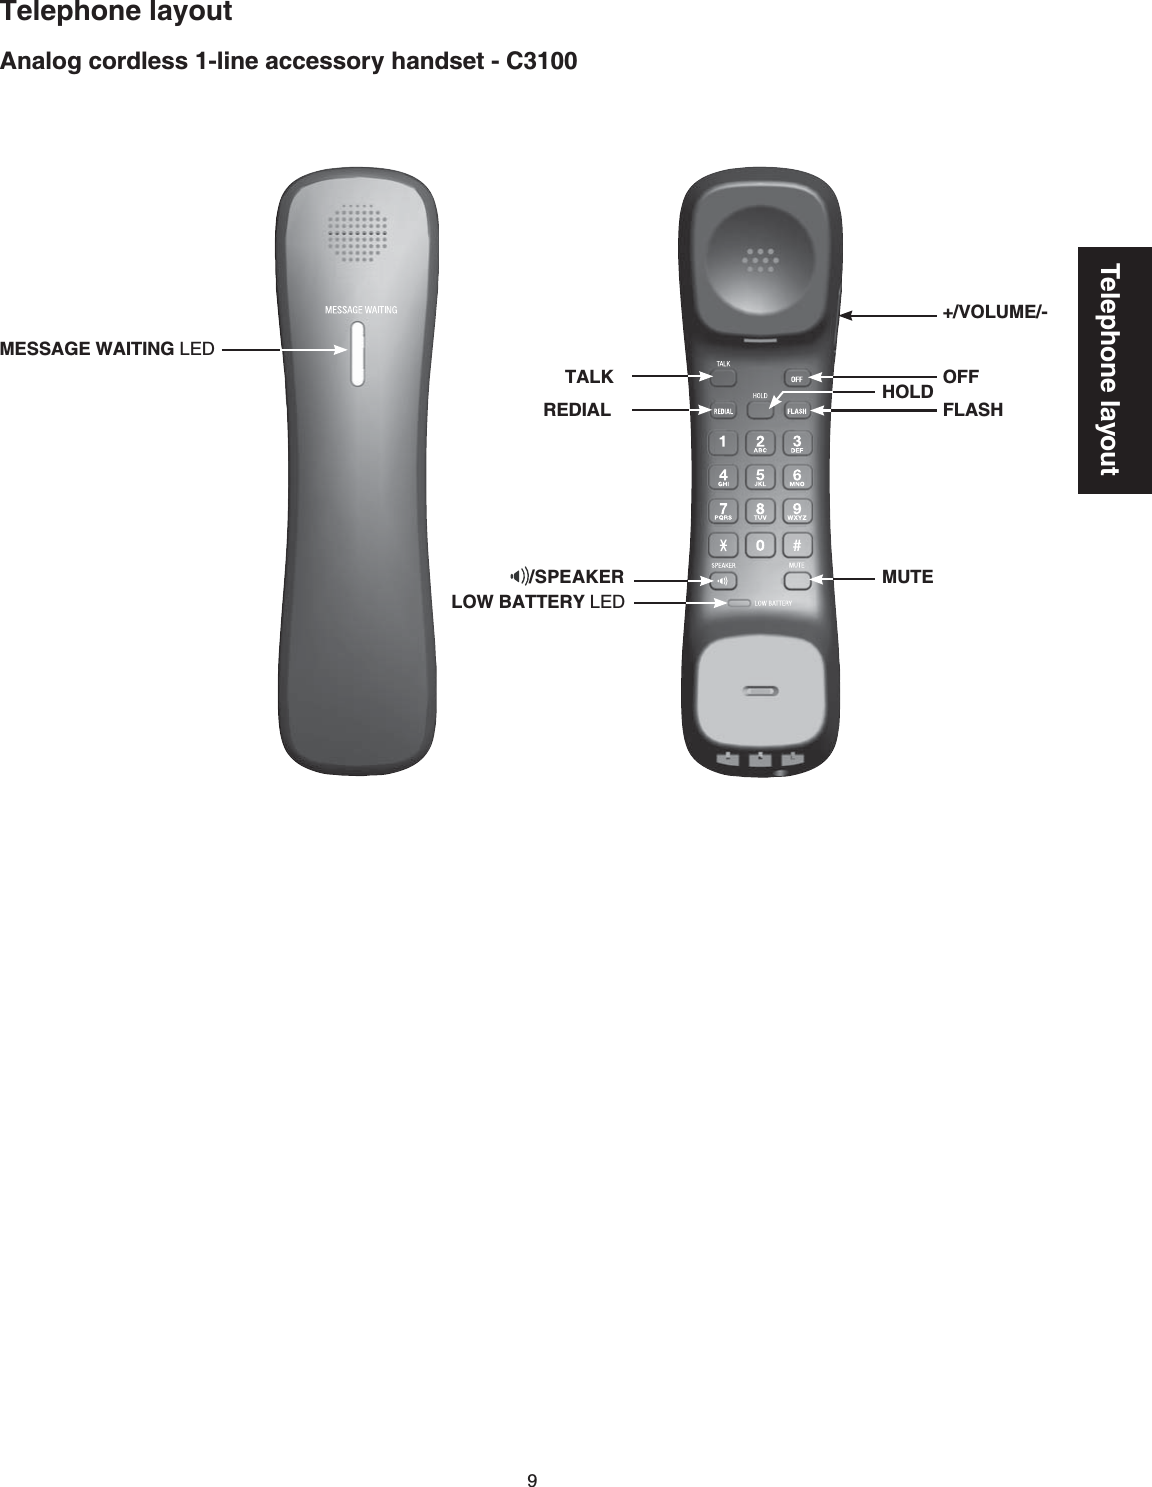 9Telephone layoutAnalog cordless 1-line accessory handset - C3100Telephone layoutTALKREDIALHOLD OFFFLASHLOW BATTERY.&apos;&amp;MUTE+/VOLUME/-MESSAGE WAITING.&apos;&amp;/SPEAKER